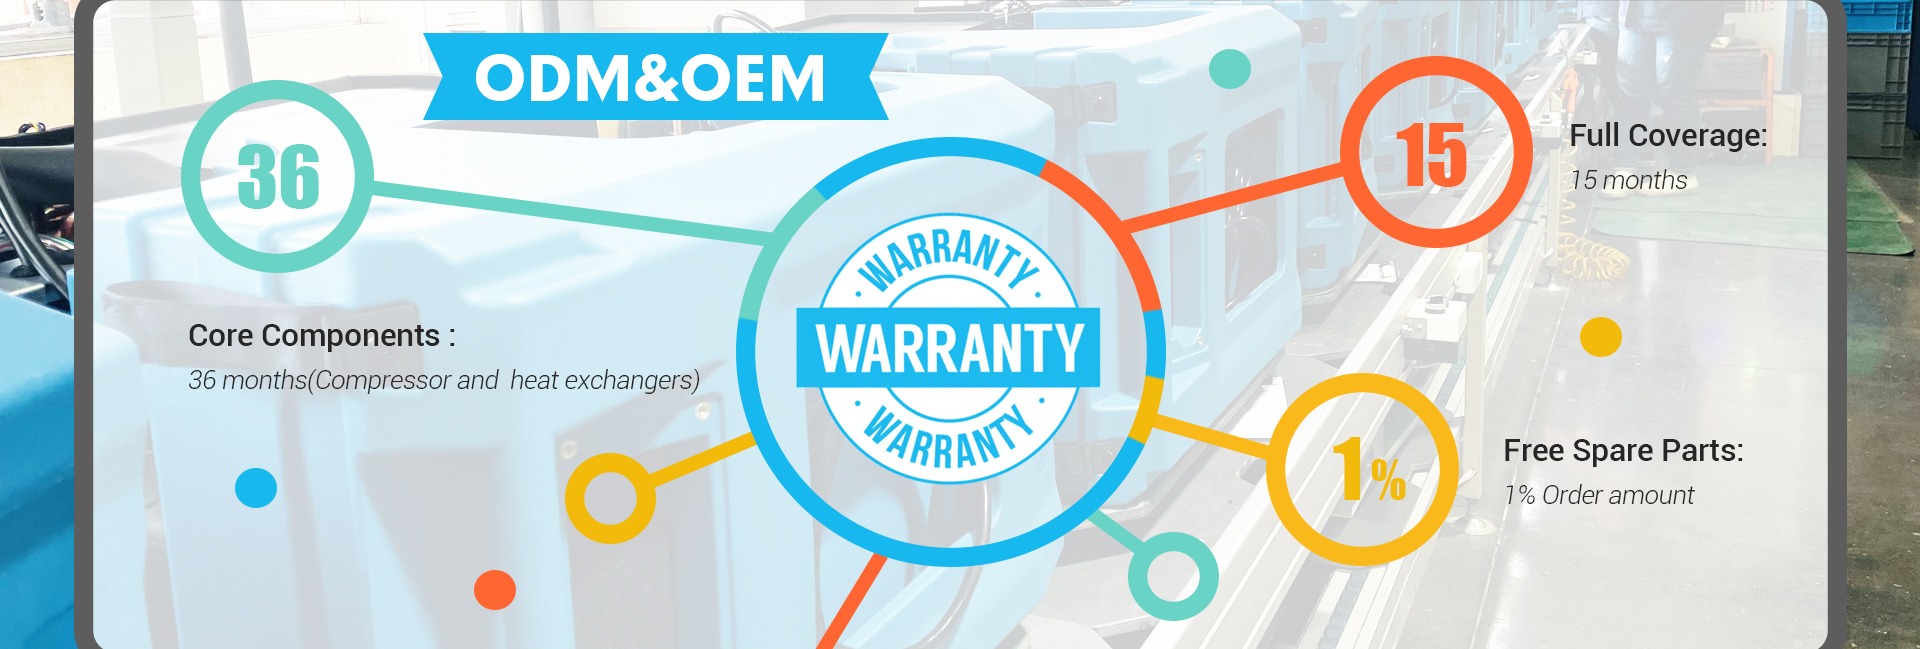 Preair Dehumidifier Warranty Policy